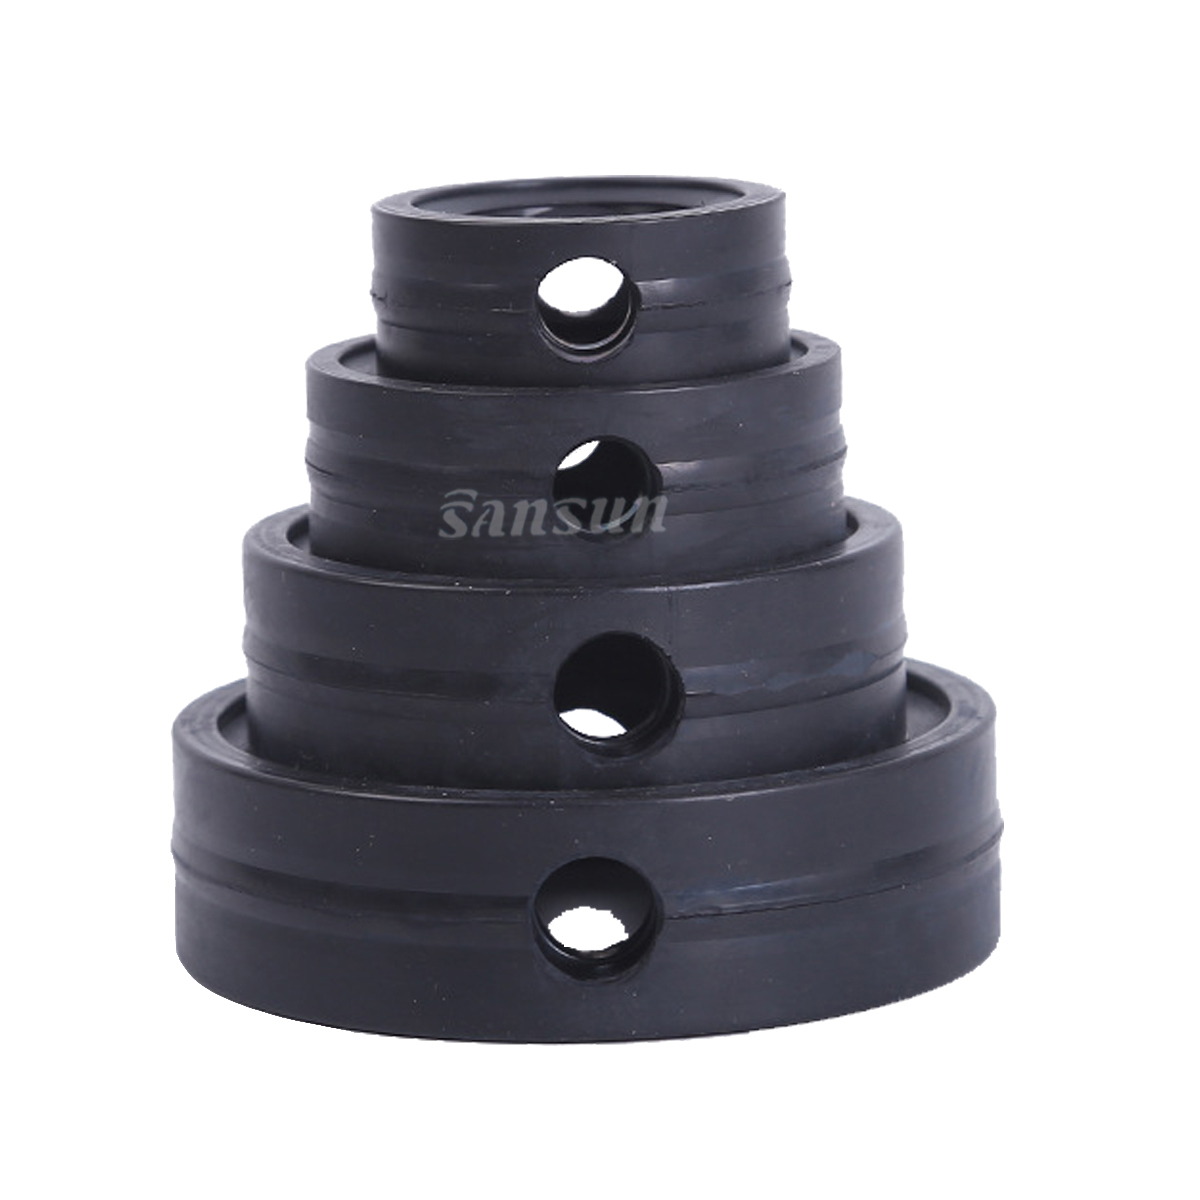 Уплотнительное кольцо из черного этиленпропиленового каучука пищевого качества для санитарного дроссельного клапана